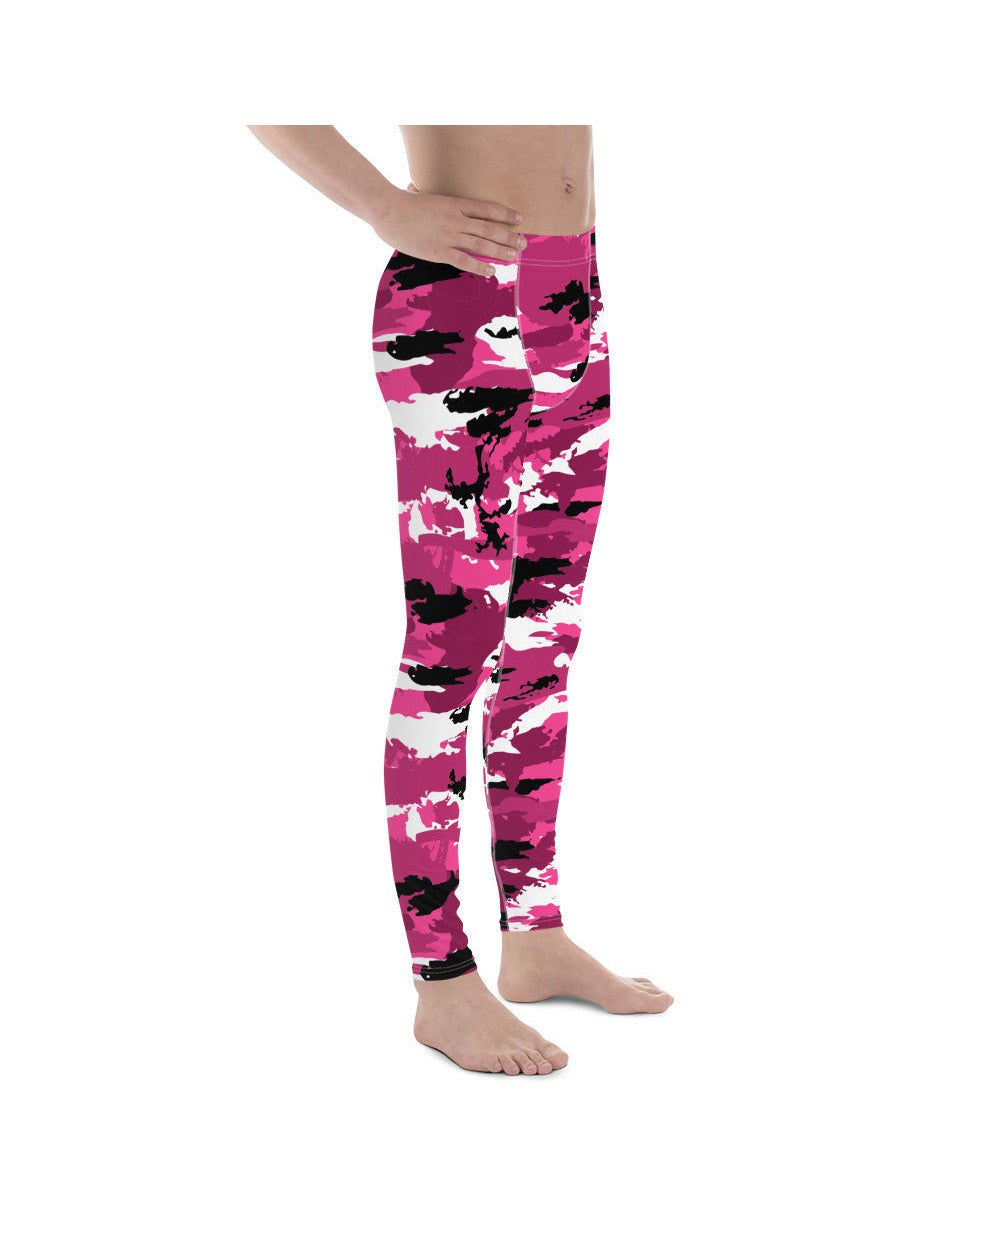 Trendsetting Pink Camo Leggings for Kids - – GIRLSTRONG INC